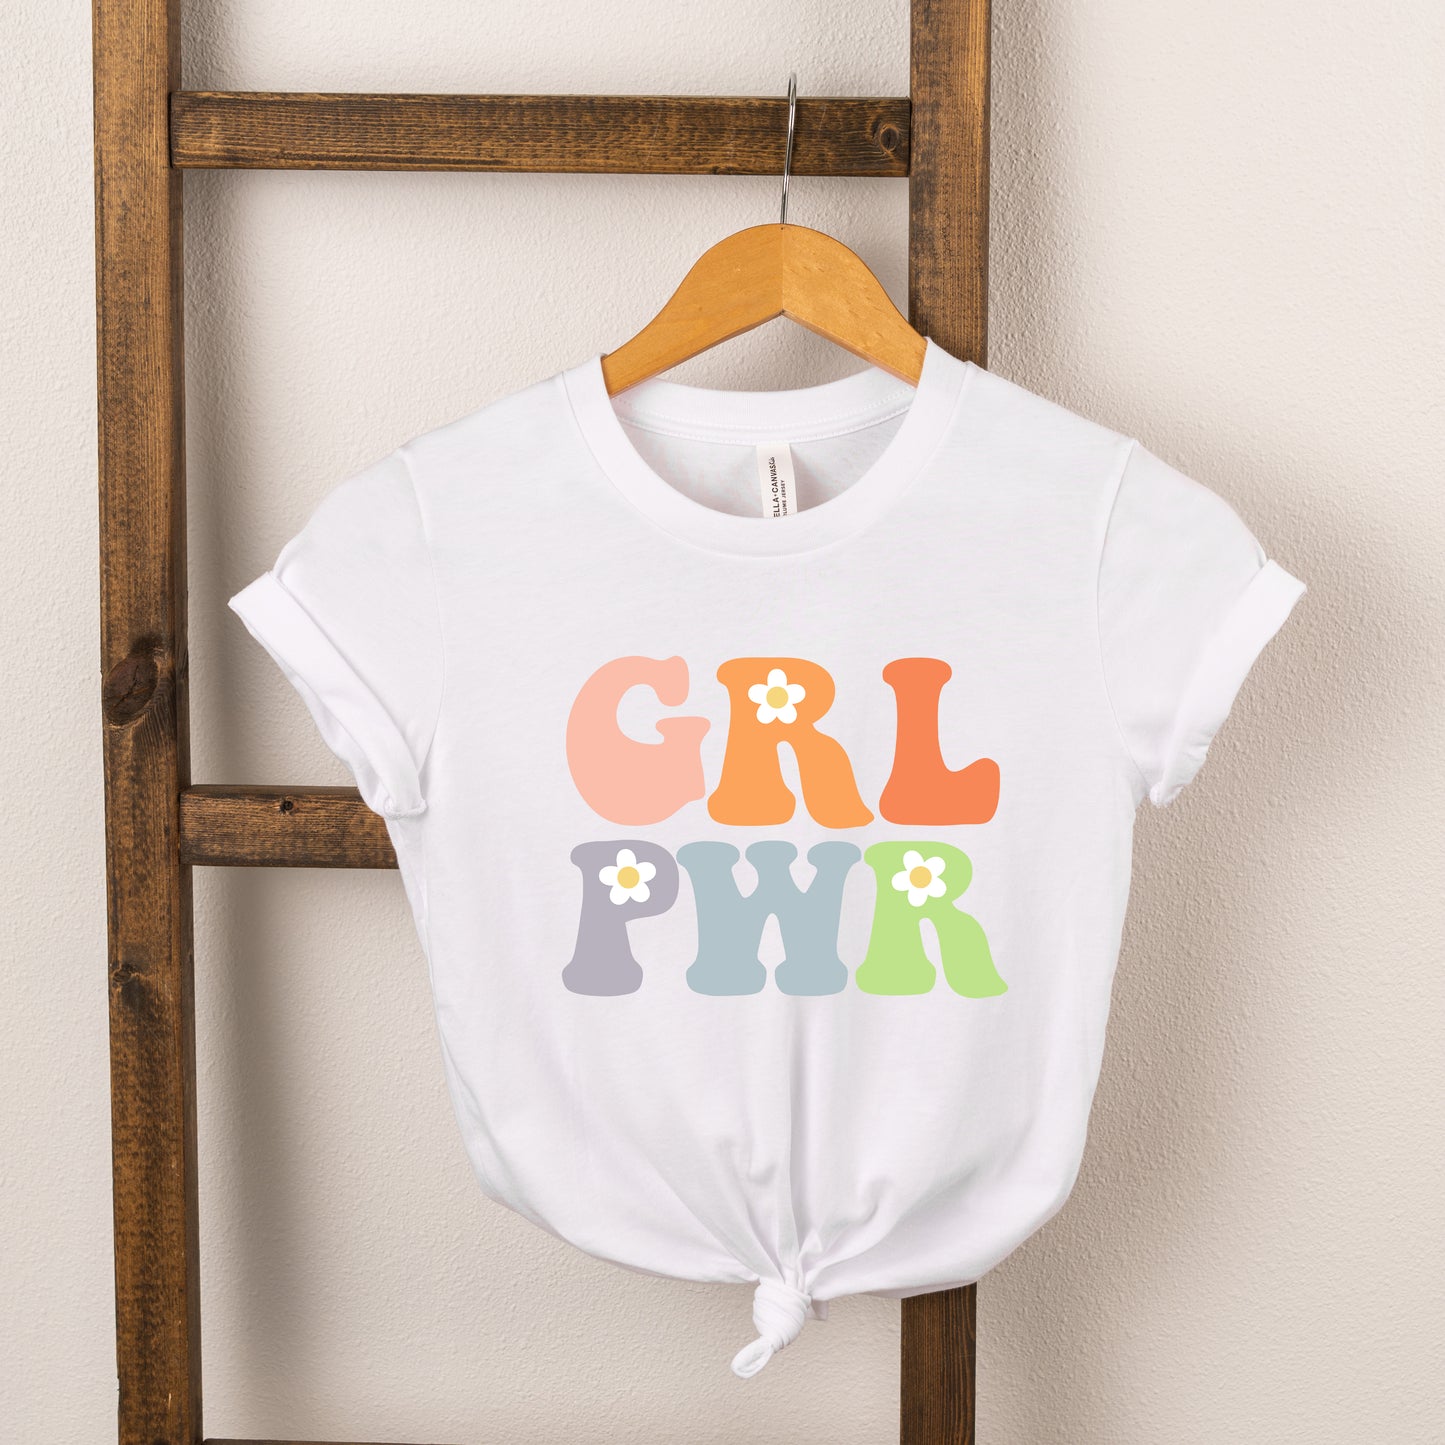 Girl Power Flowers | Toddler Short Sleeve Crew Neck